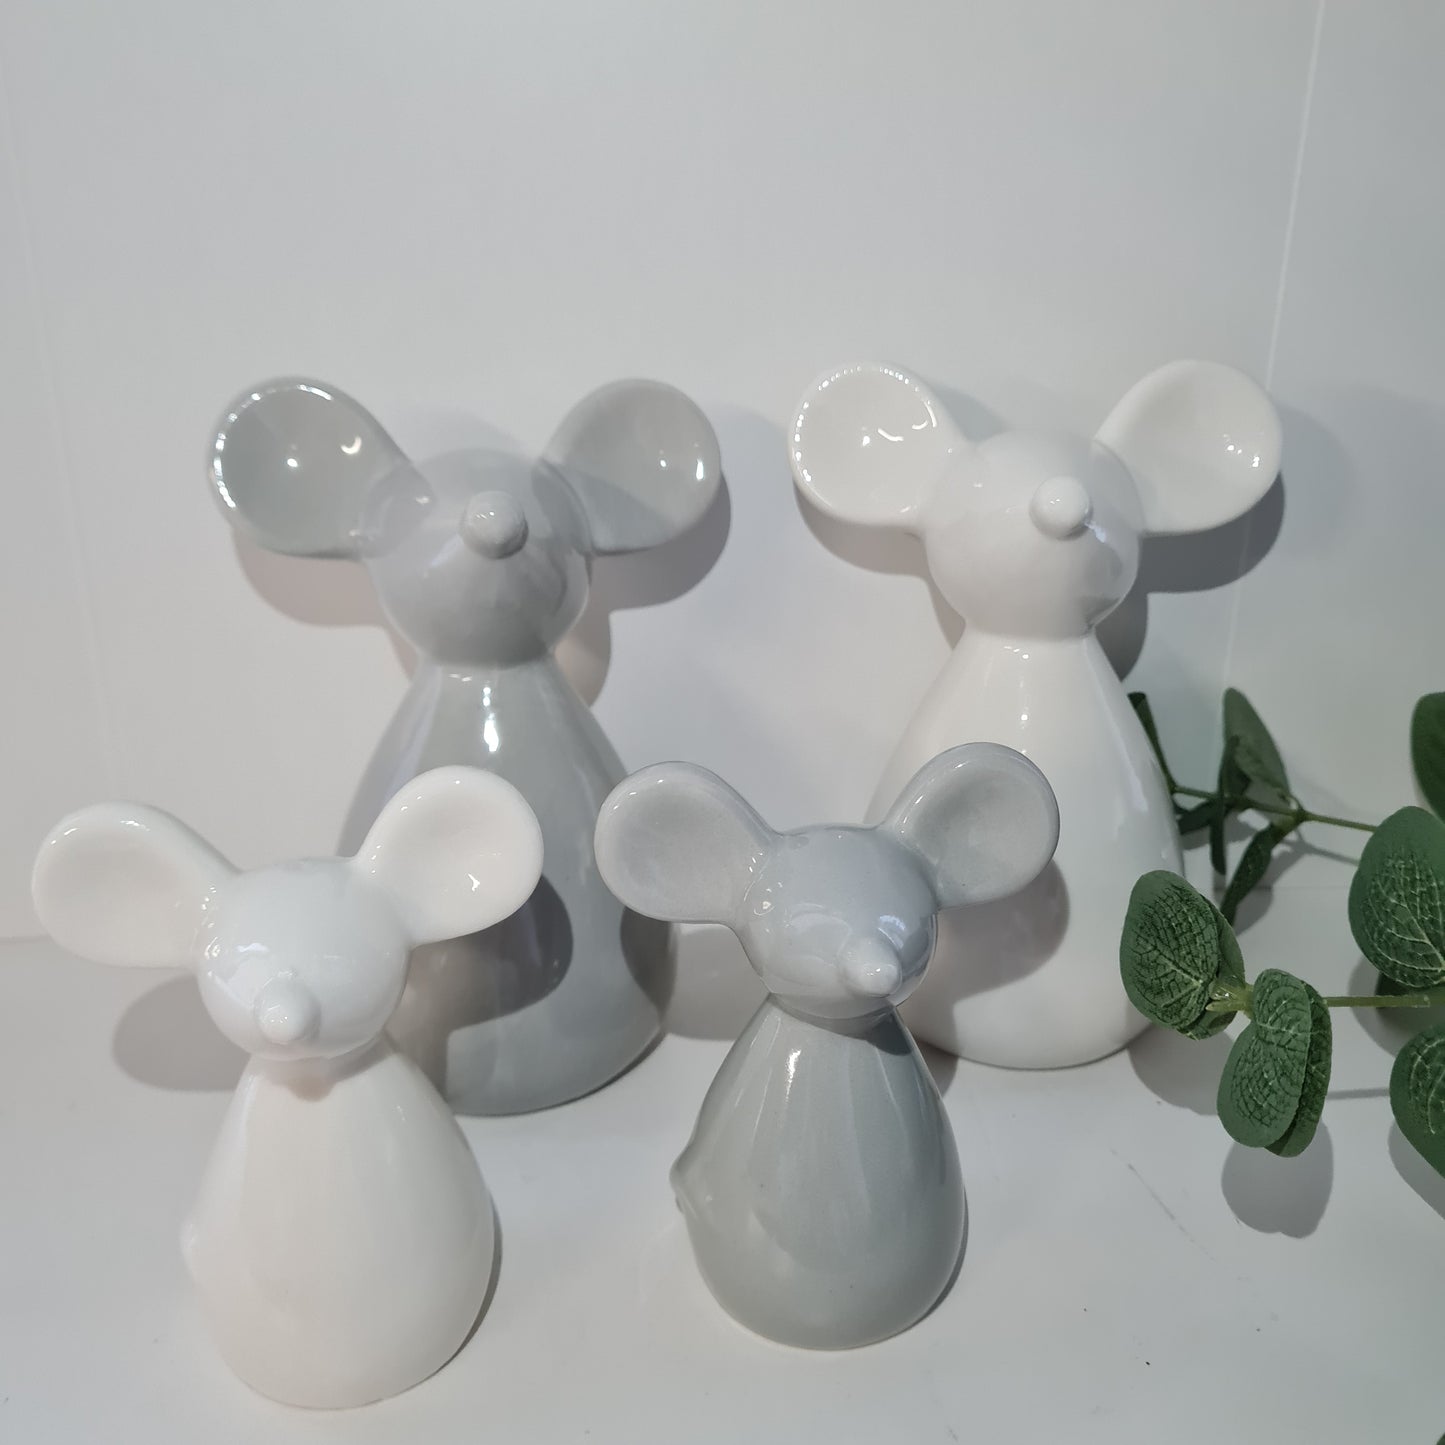 Grey Ceramic Mouse, 2 sizes